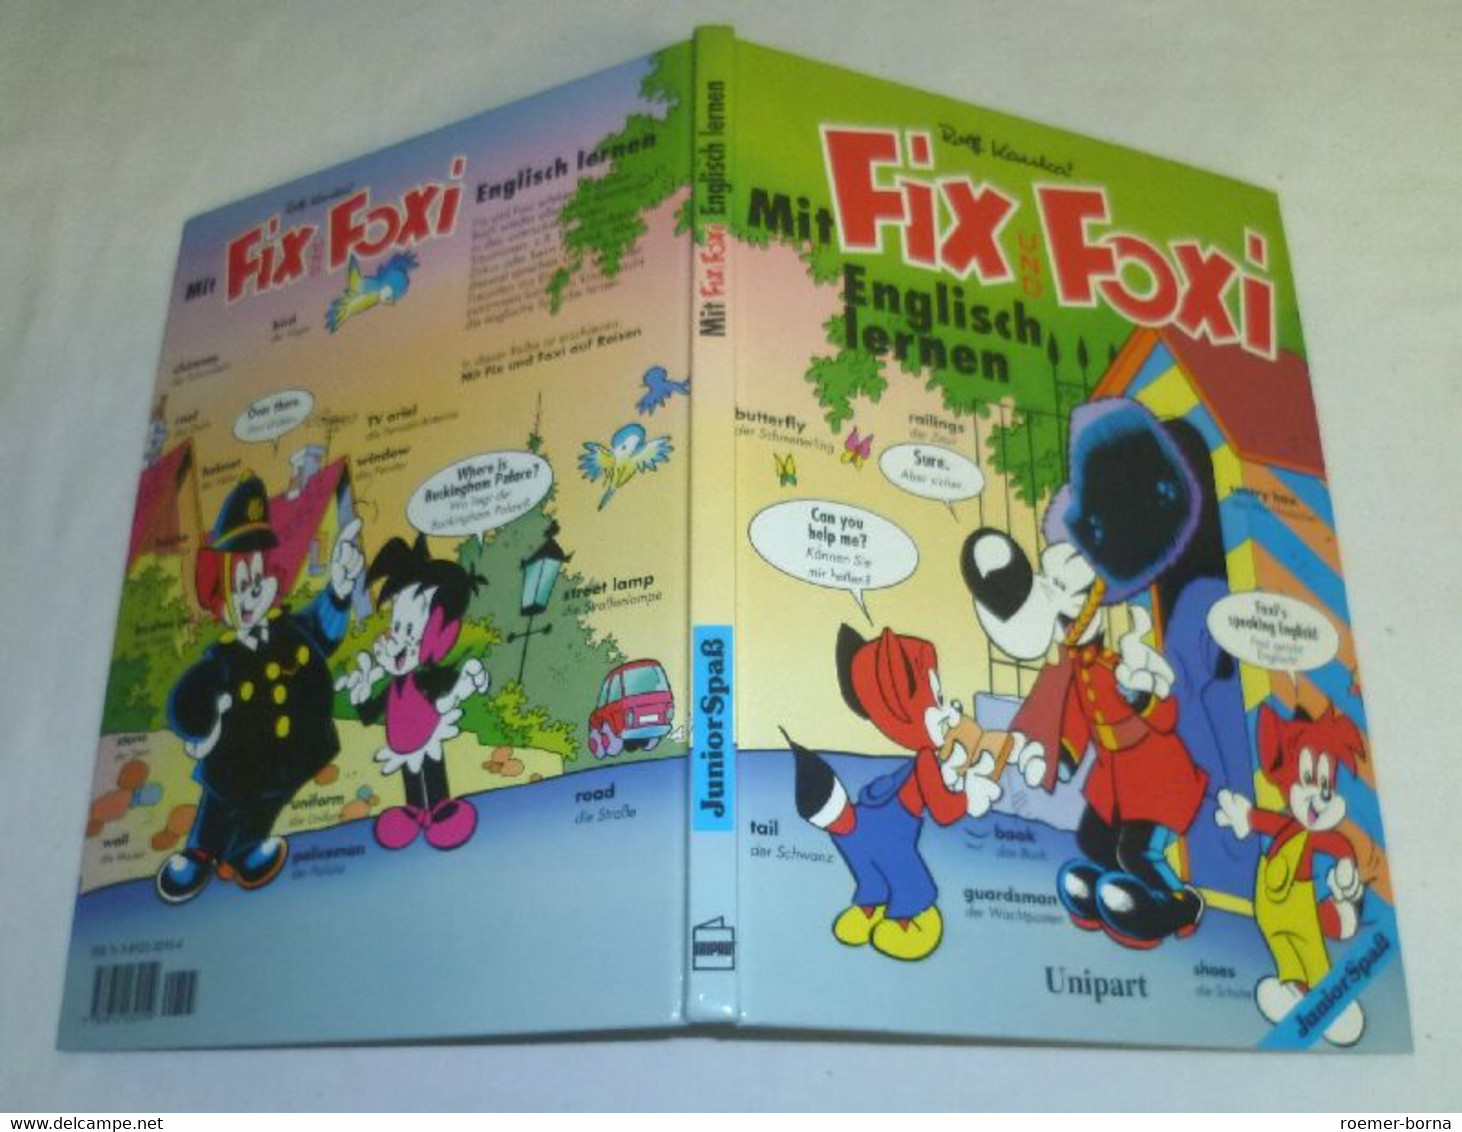 Mit Fix Und Foxi Englisch Lernen - School Books